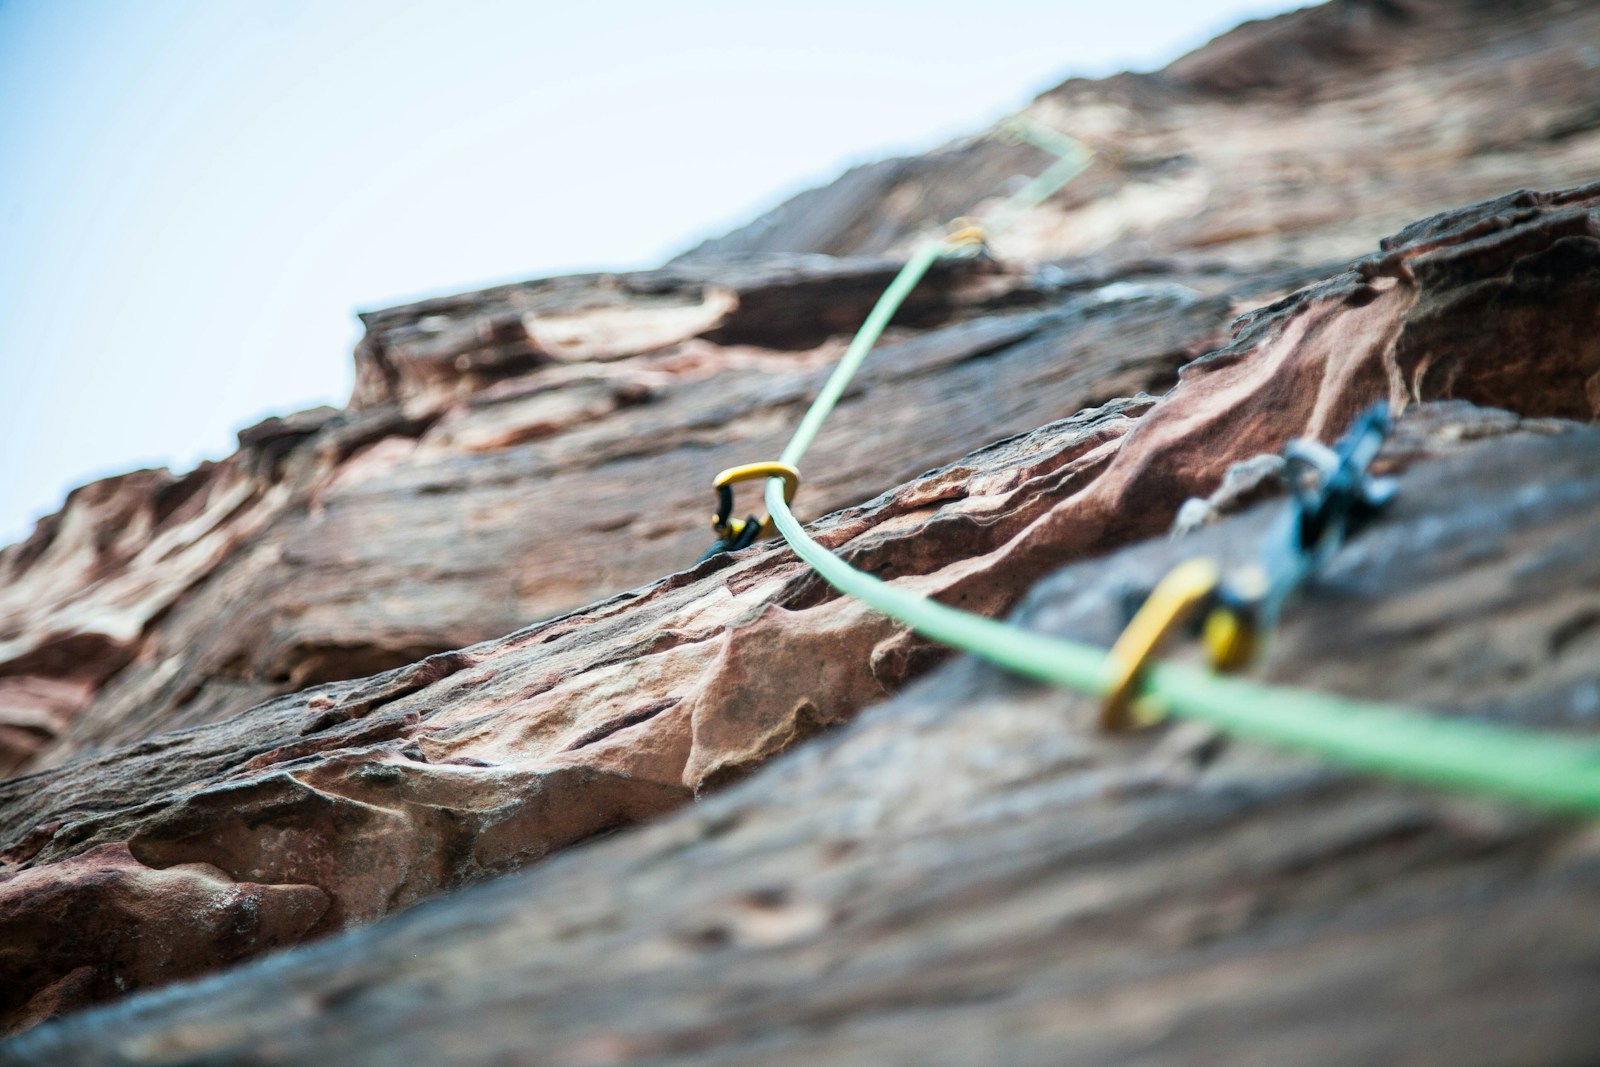 Tipps für sicheres Klettern an Felswänden